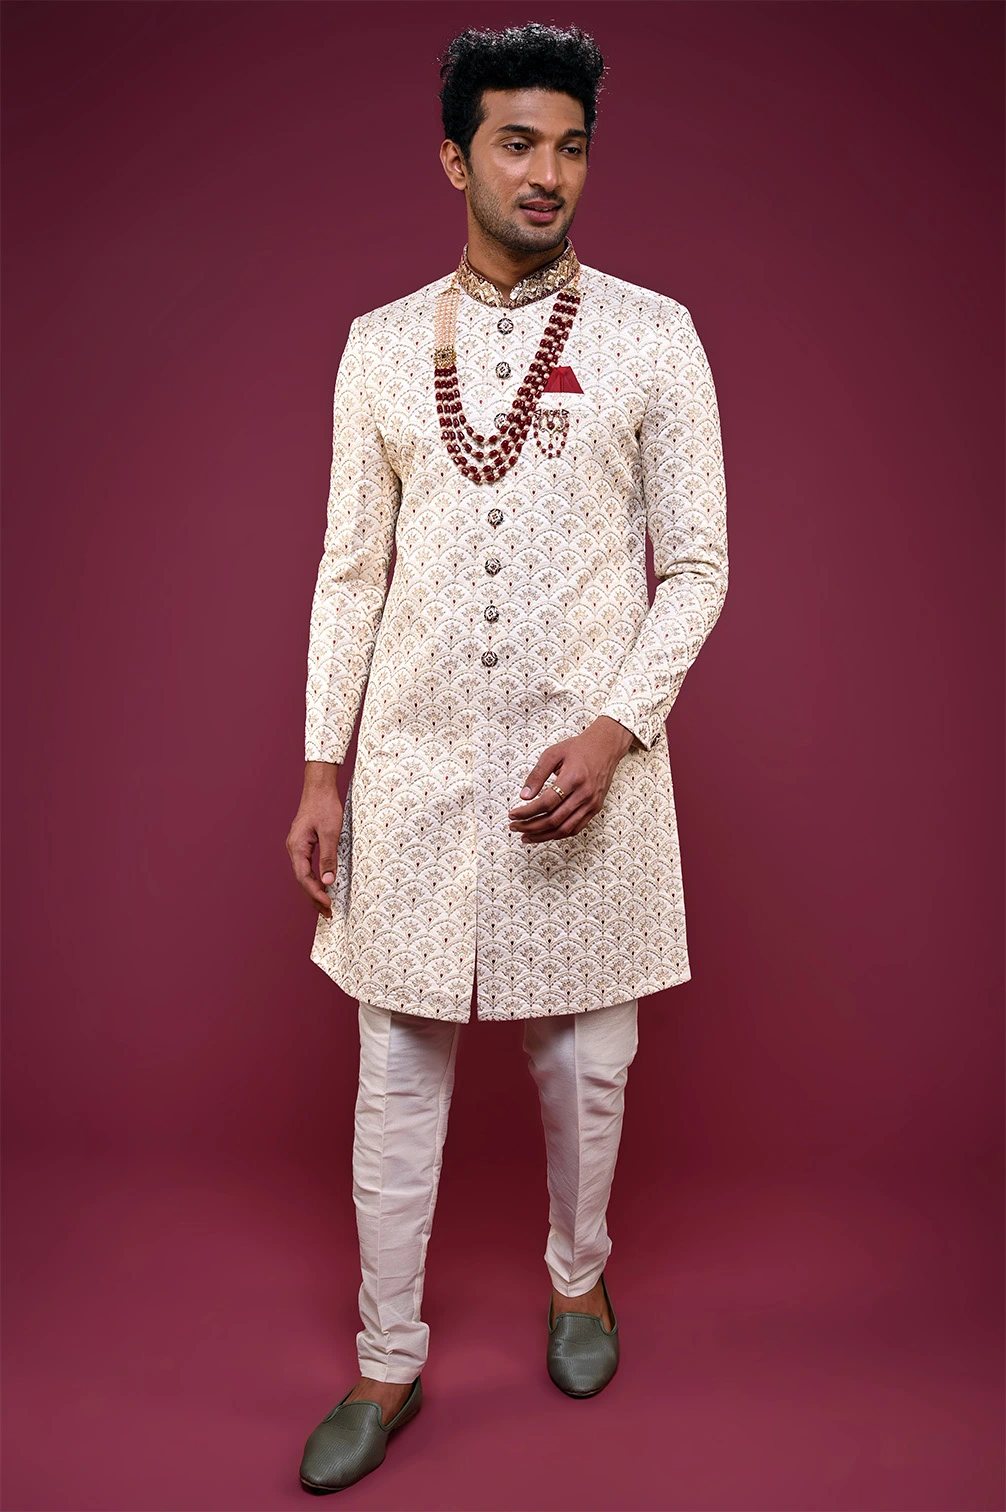 Mens Wedding Sherwani /white Royal Sherwani / Indian Suit for Men / Indian  Mens Wear / Indian Dress / Sherwani for Men / Indian Suit - Etsy UK |  Sherwani for men